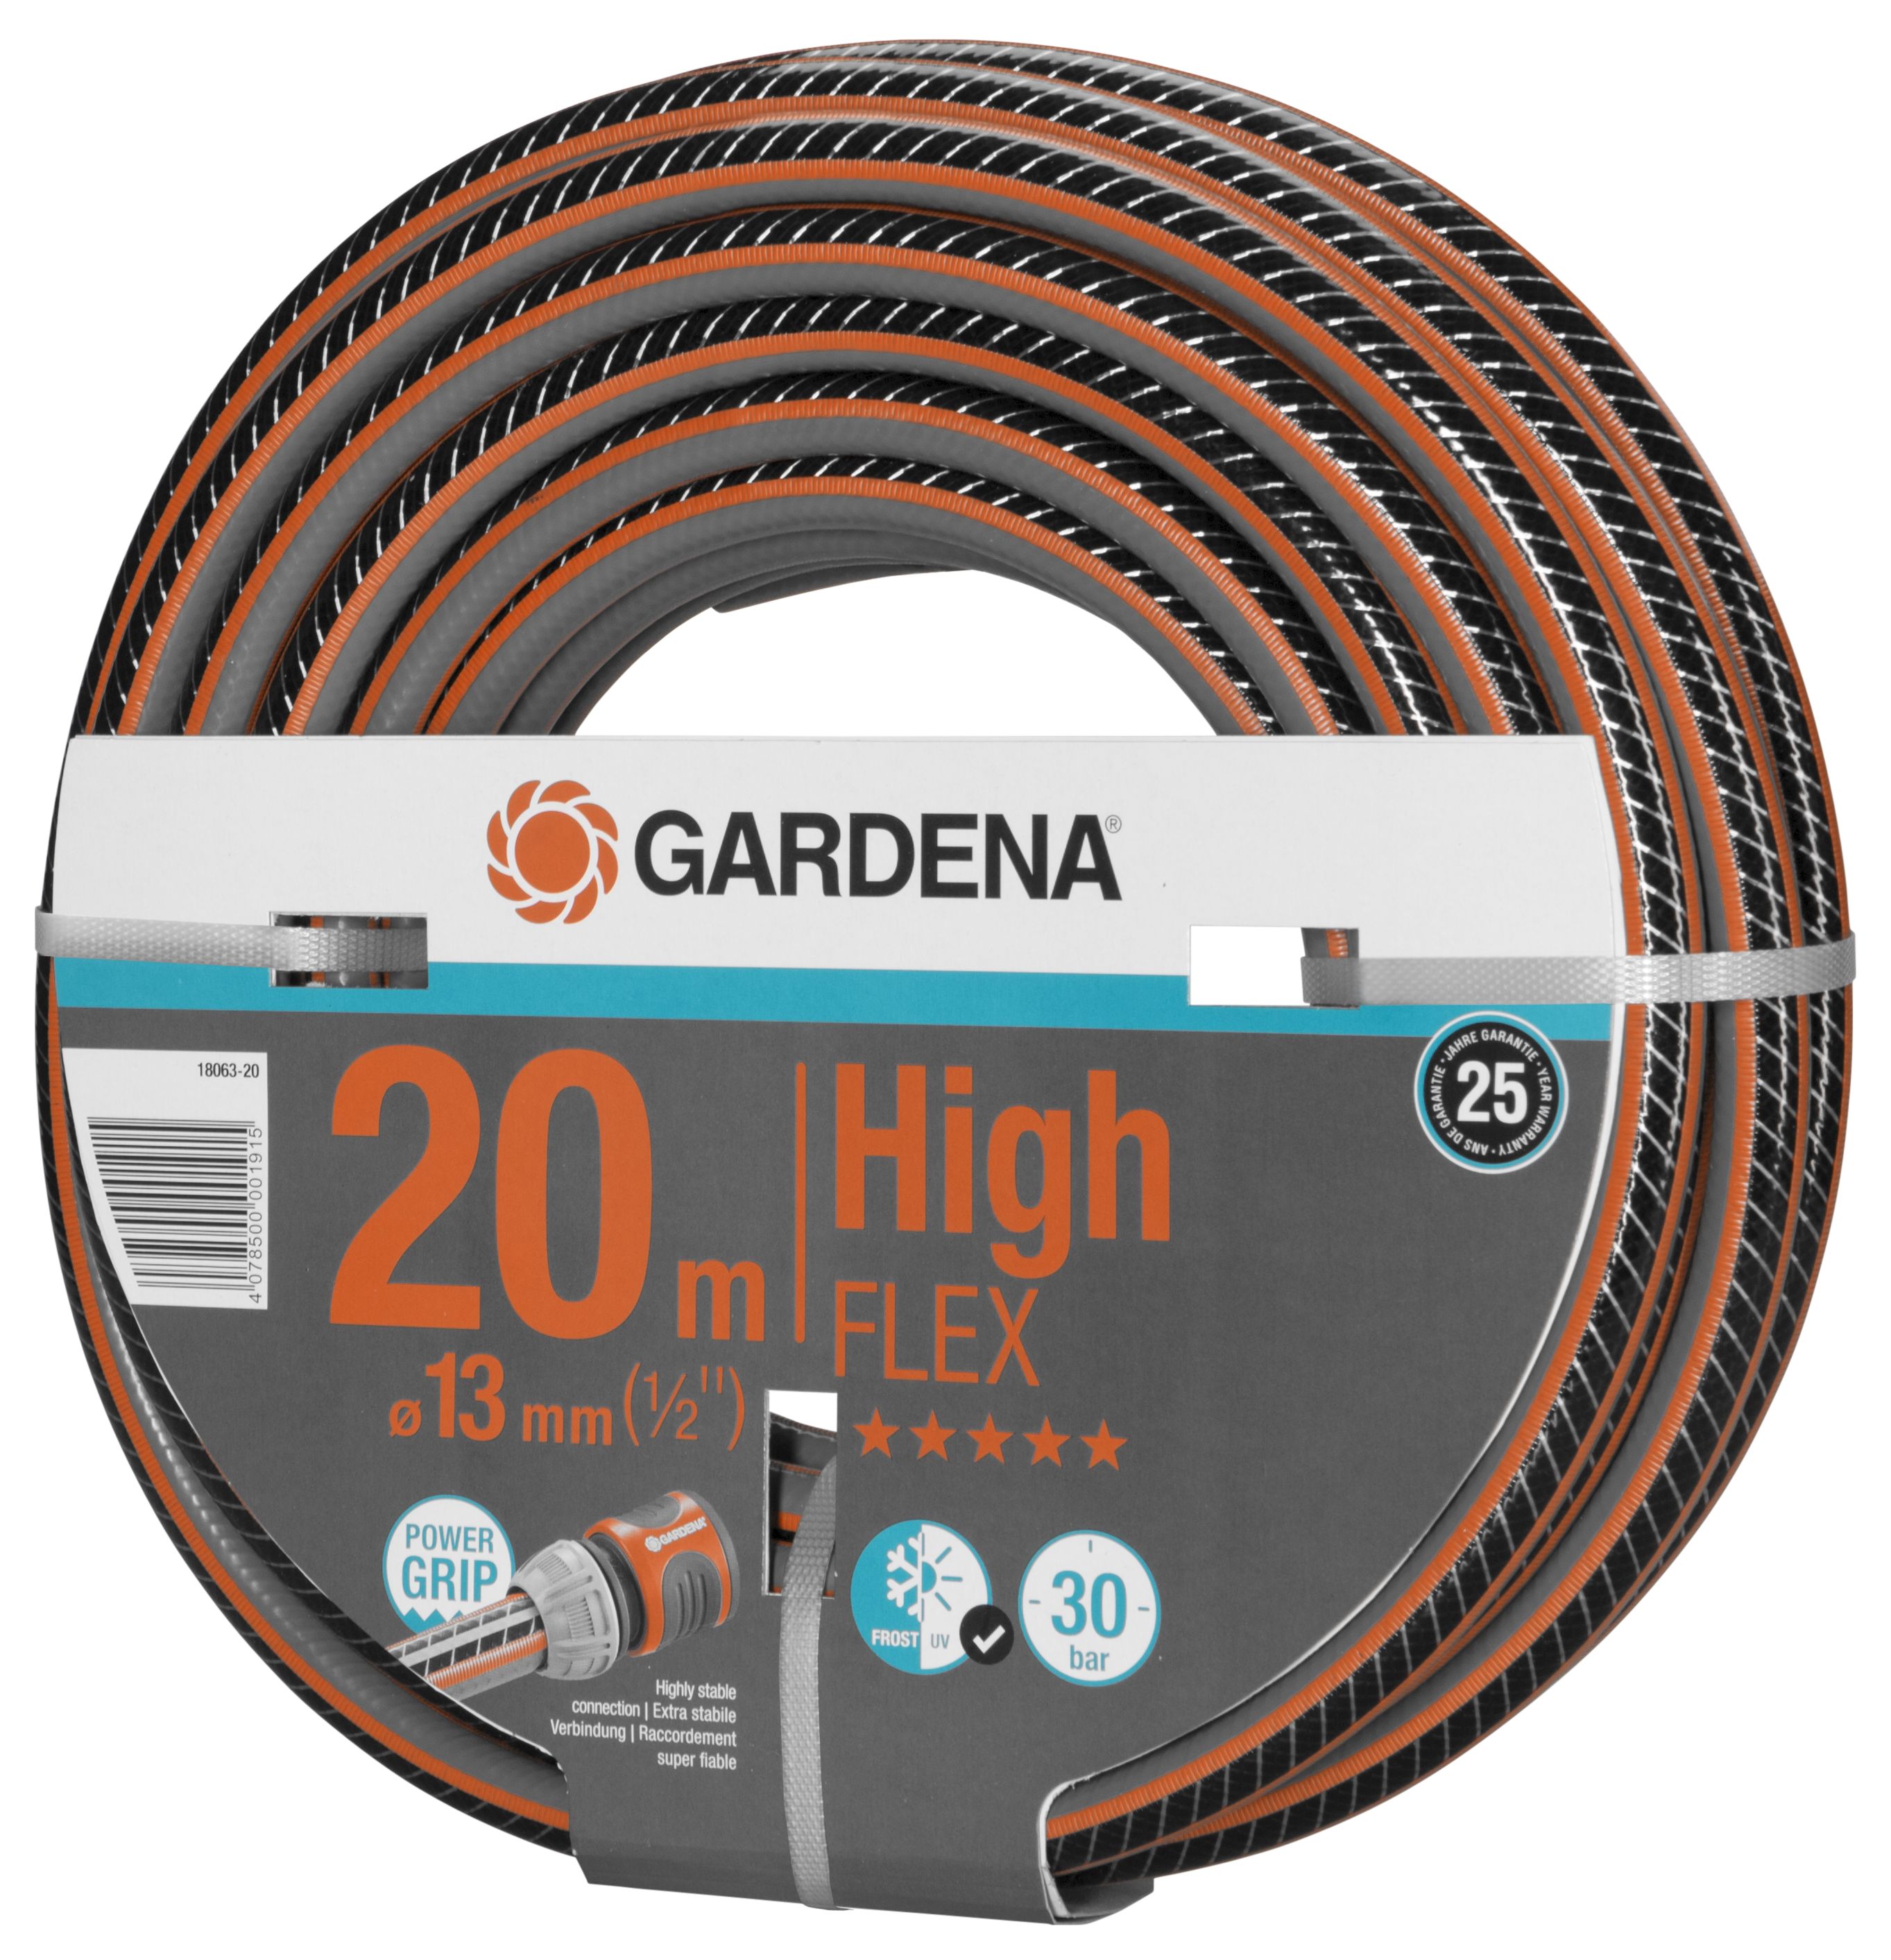 GARDENA Comfort HighFLEX Schlauch 13 mm (1/2"), 20 m